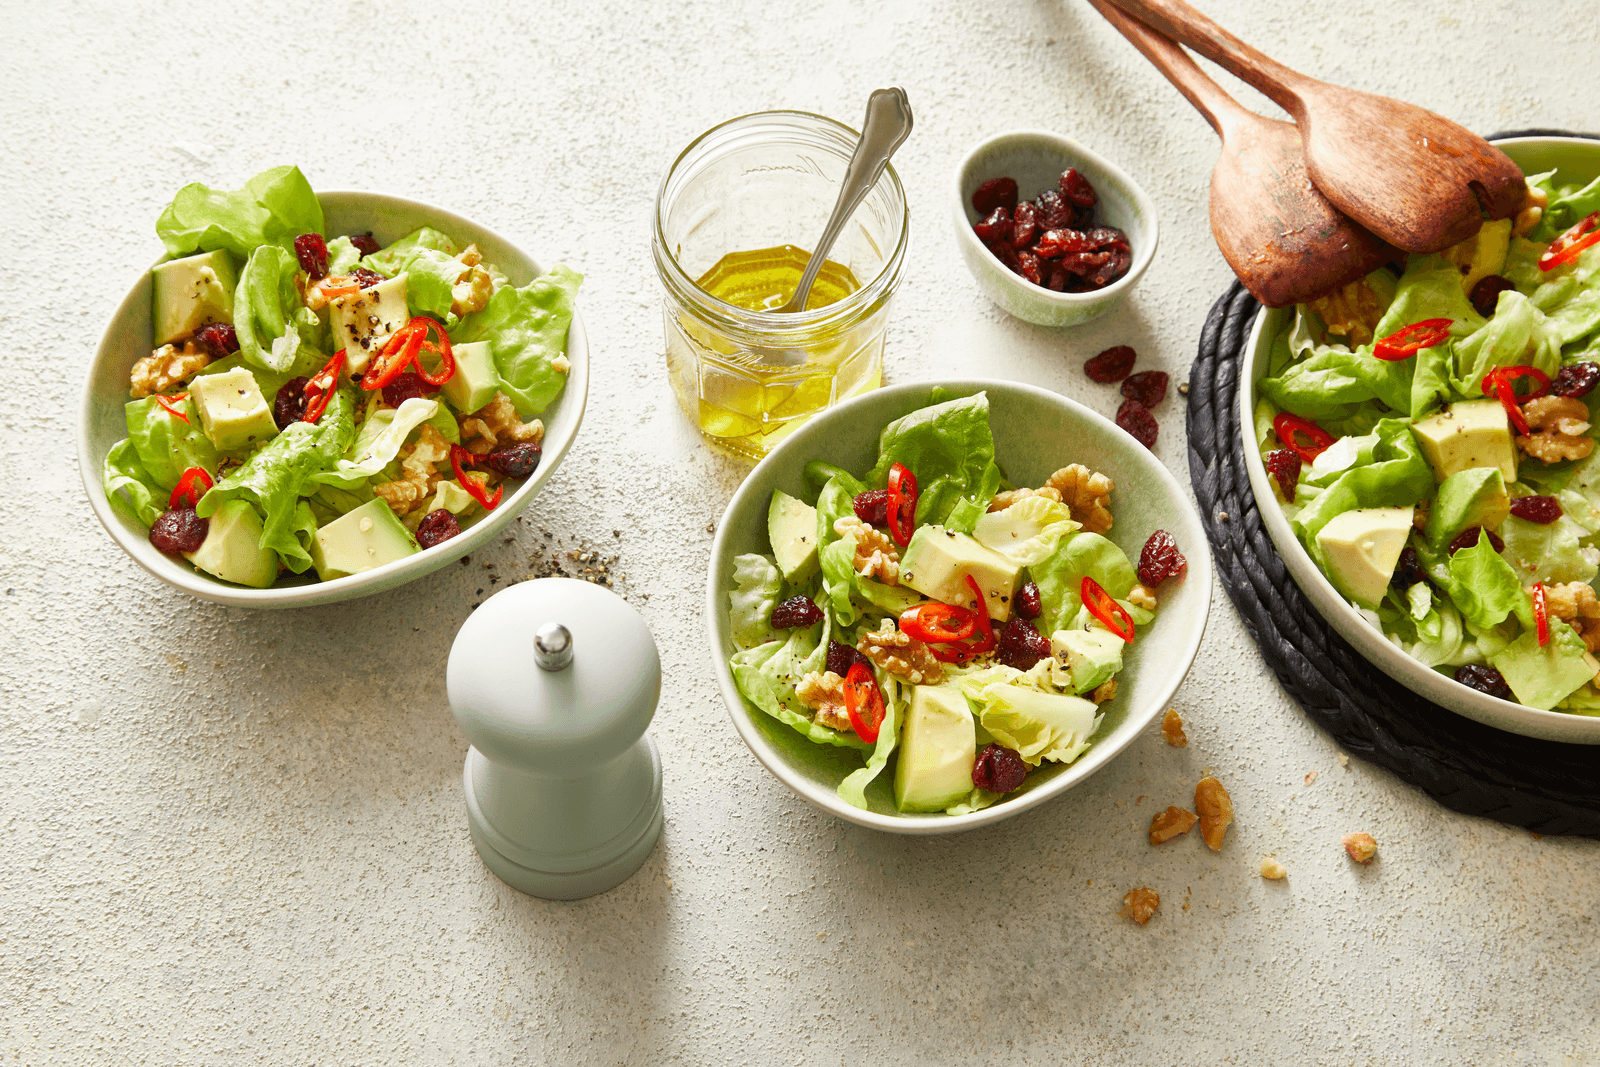 Grüner Salat mit Cranberries, Avocados und Walnüssen Rezept - REWE.de